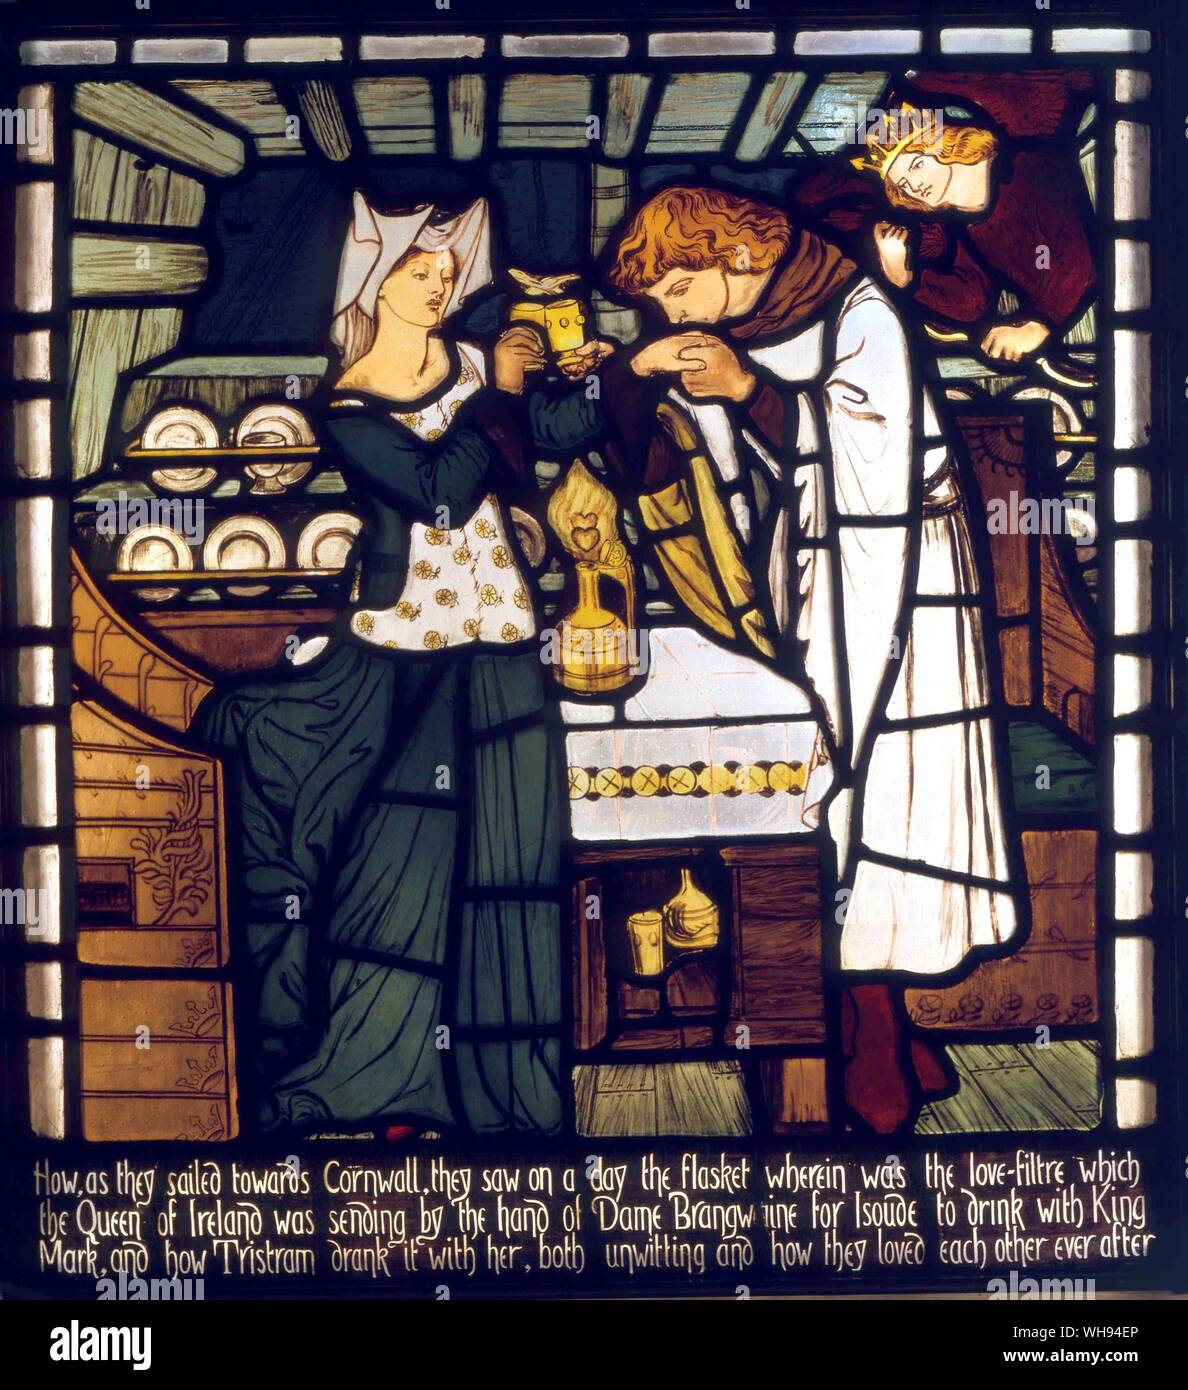 Tristan & Isolde - 1862. La potion d'amour, destinés à la foire d'Isolde et Roi Mark de Cornouailles, mais bu par Tristan et Isolde la juste, à partir de 'l'histoire de Tristan et Isolde', vitrail de la salle de musique, Harden Grange, nr. Bingley, Yorkshire, conçu par Dante G. William Morris (24 mars 1834 - 3 octobre 1896) fut l'un des principaux fondateurs du mouvement Arts and Crafts britannique et est mieux connu comme un créateur de papier peint et tissus à motifs, un auteur de poésie et de fiction, et un pionnier du mouvement socialiste en Grande-Bretagne, près de Londres.. Localisation © Art Bradford Banque D'Images